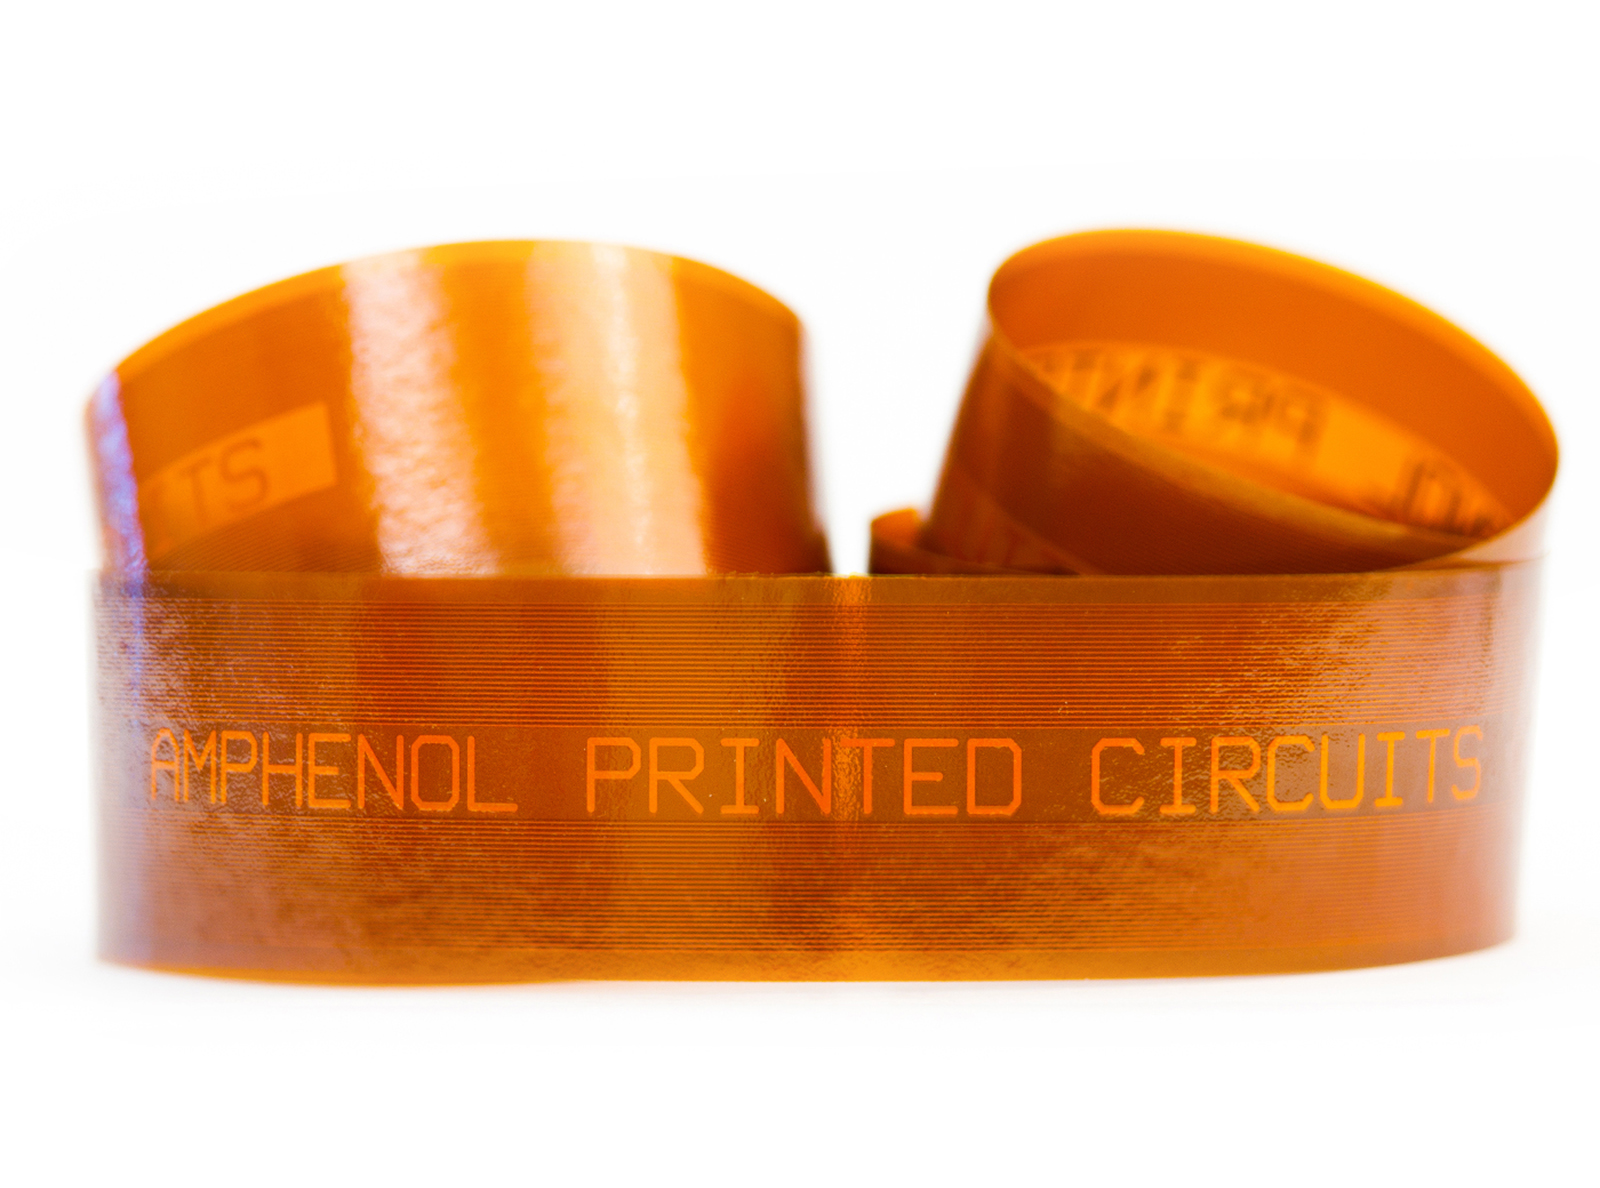 Amphenol Printed Circuits